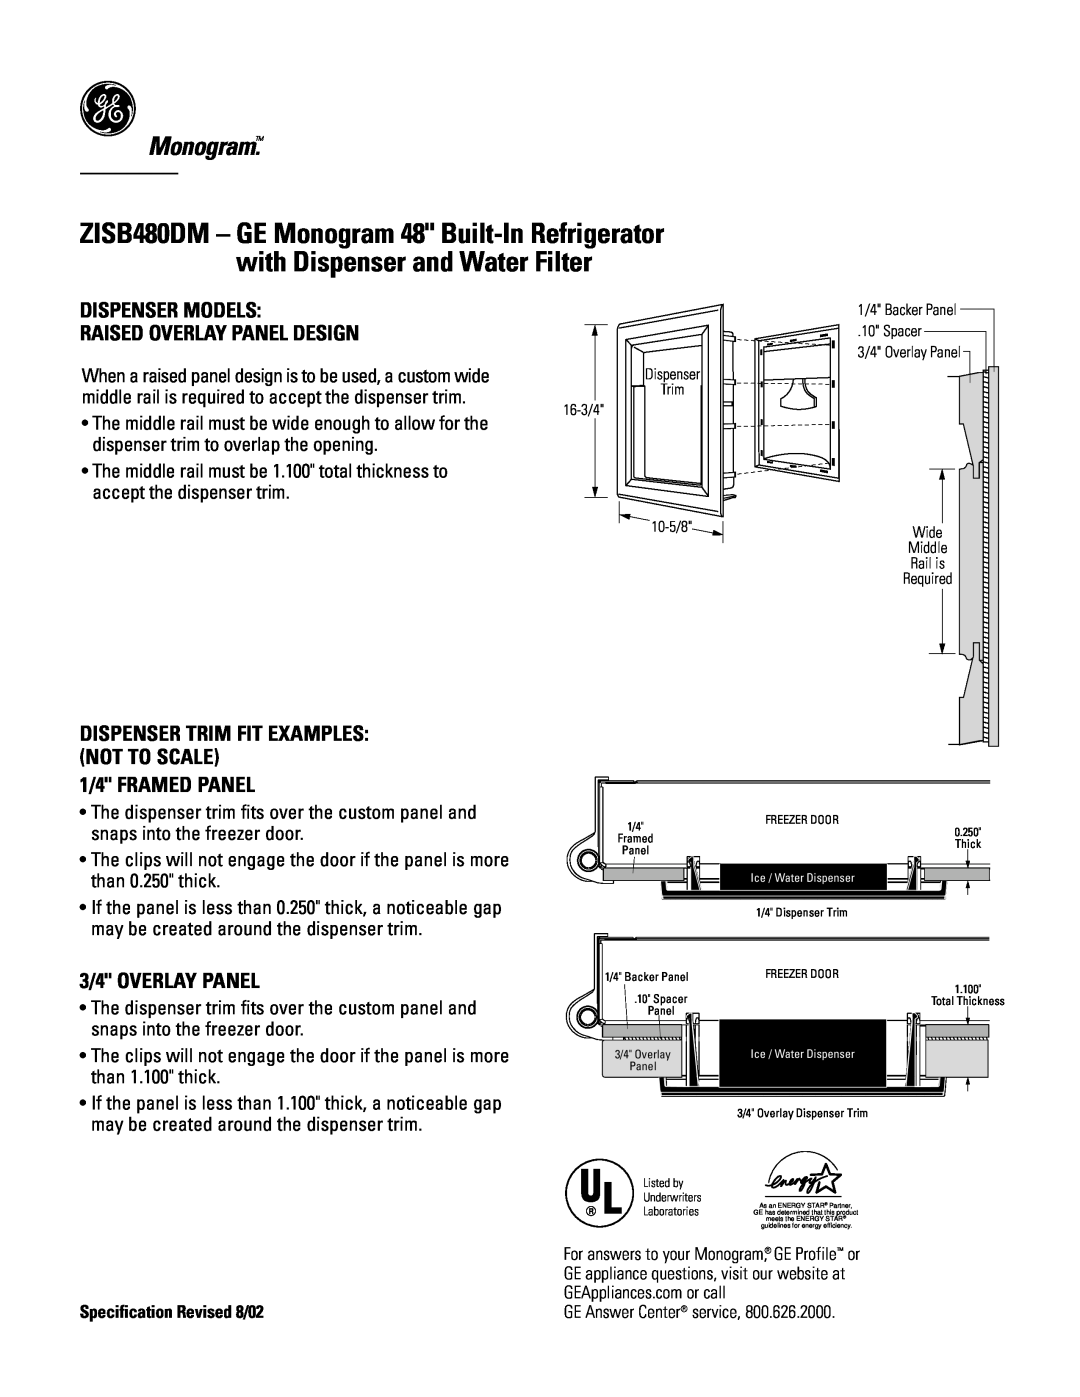 GE Monogram ZISB480DM Monogram, Dispenser Models Raised Overlay Panel Design, 1/4 FRAMED PANEL, 3/4 OVERLAY PANEL 